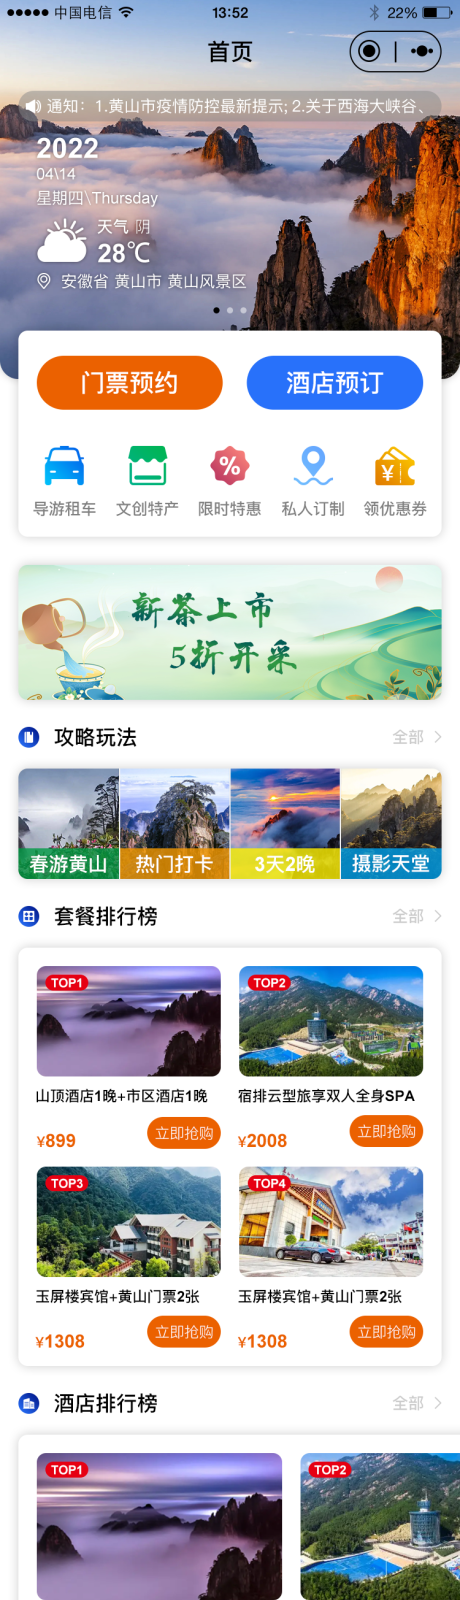 黄山旅游小程序UI界面设计